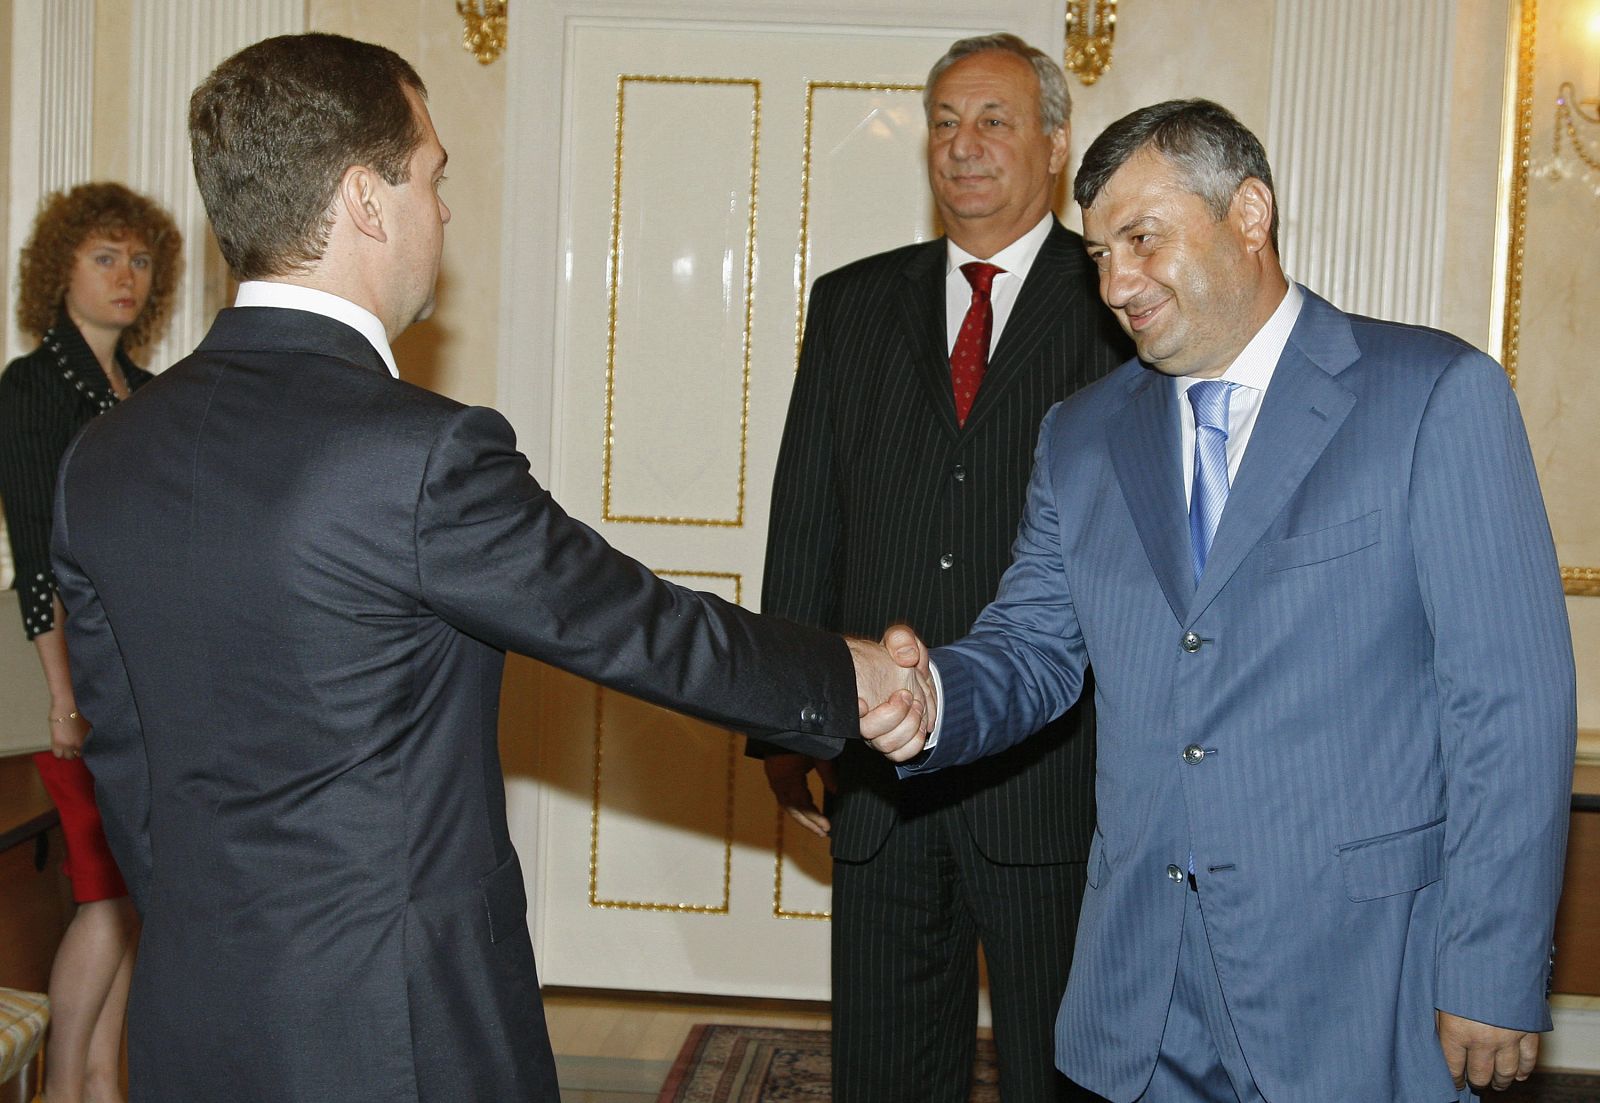 El presidente ruso, Dimitri Medvedev recibe a los presidentes de Abjasia, Sergei Bagapsh (en primer plano), y Osetia del Sur, Eduard Kokoity (al fondo), en Moscú el 14 de agosto de 2008.